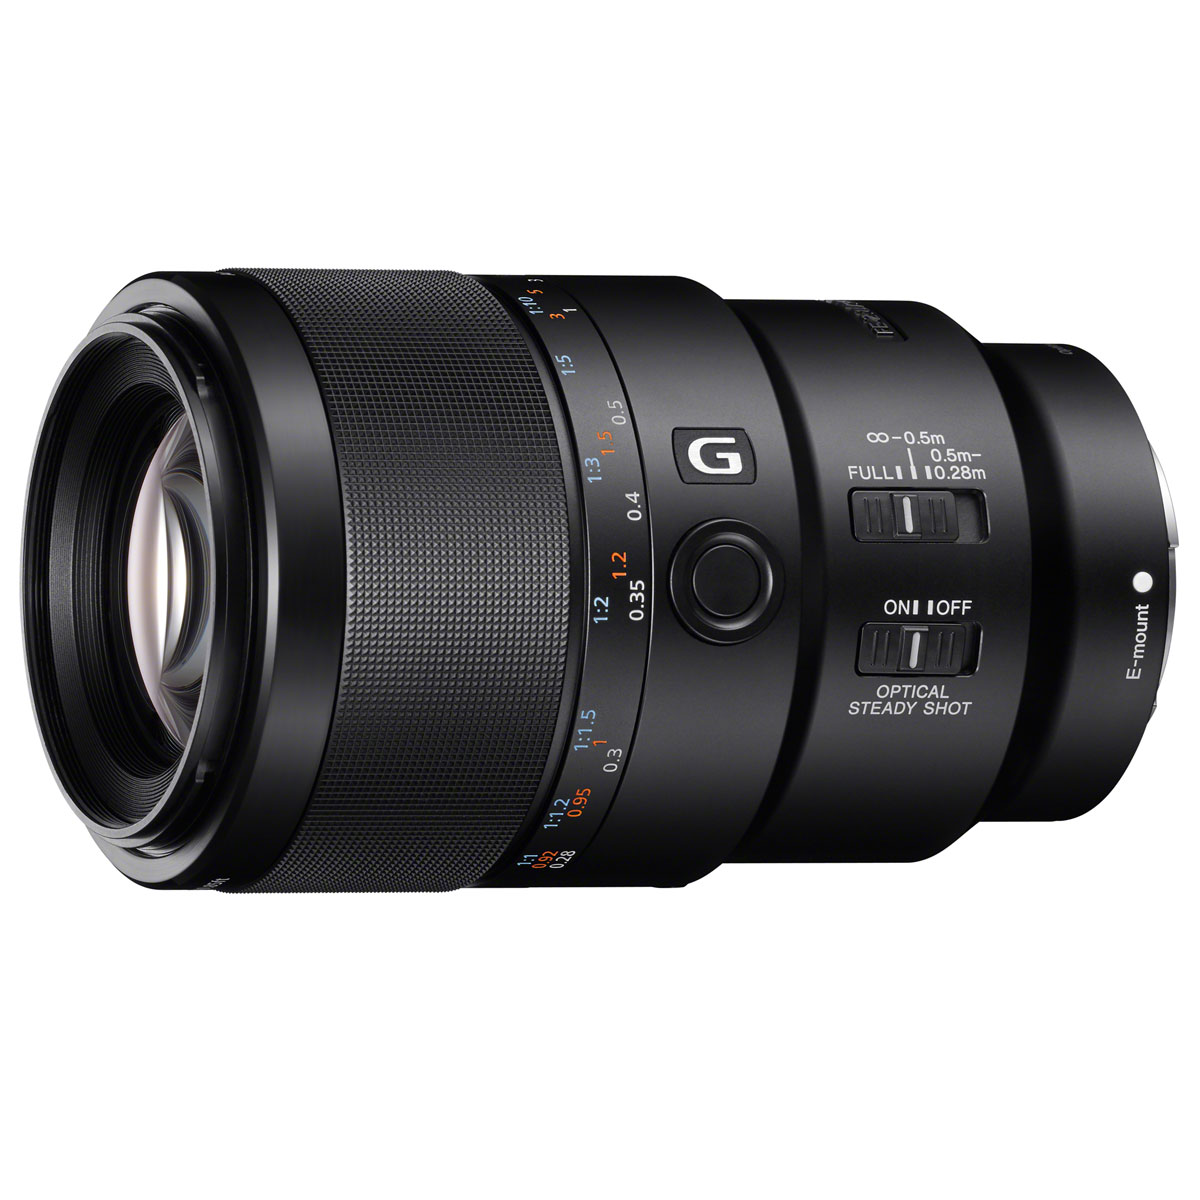 Sony FE 90mm F2.8 Macro G OSS 鏡頭規格、價錢及介紹文- DCFever.com